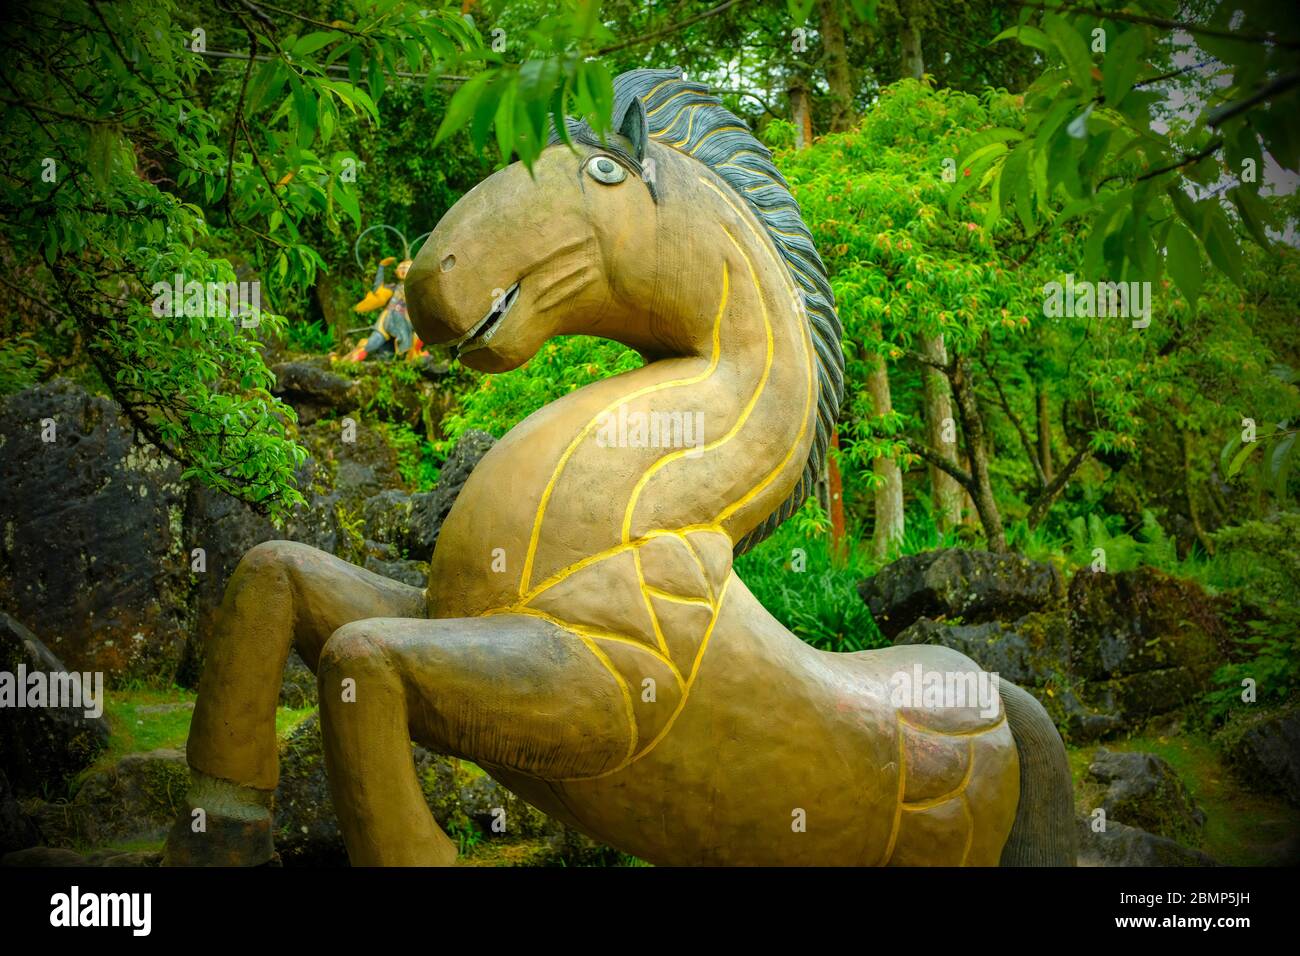 SA pa, Vietnam - 26 aprile 2018: Ingenua arte dipinta scultura in legno di un cavallo, presa in una giornata ricopertata con alberi sullo sfondo Foto Stock